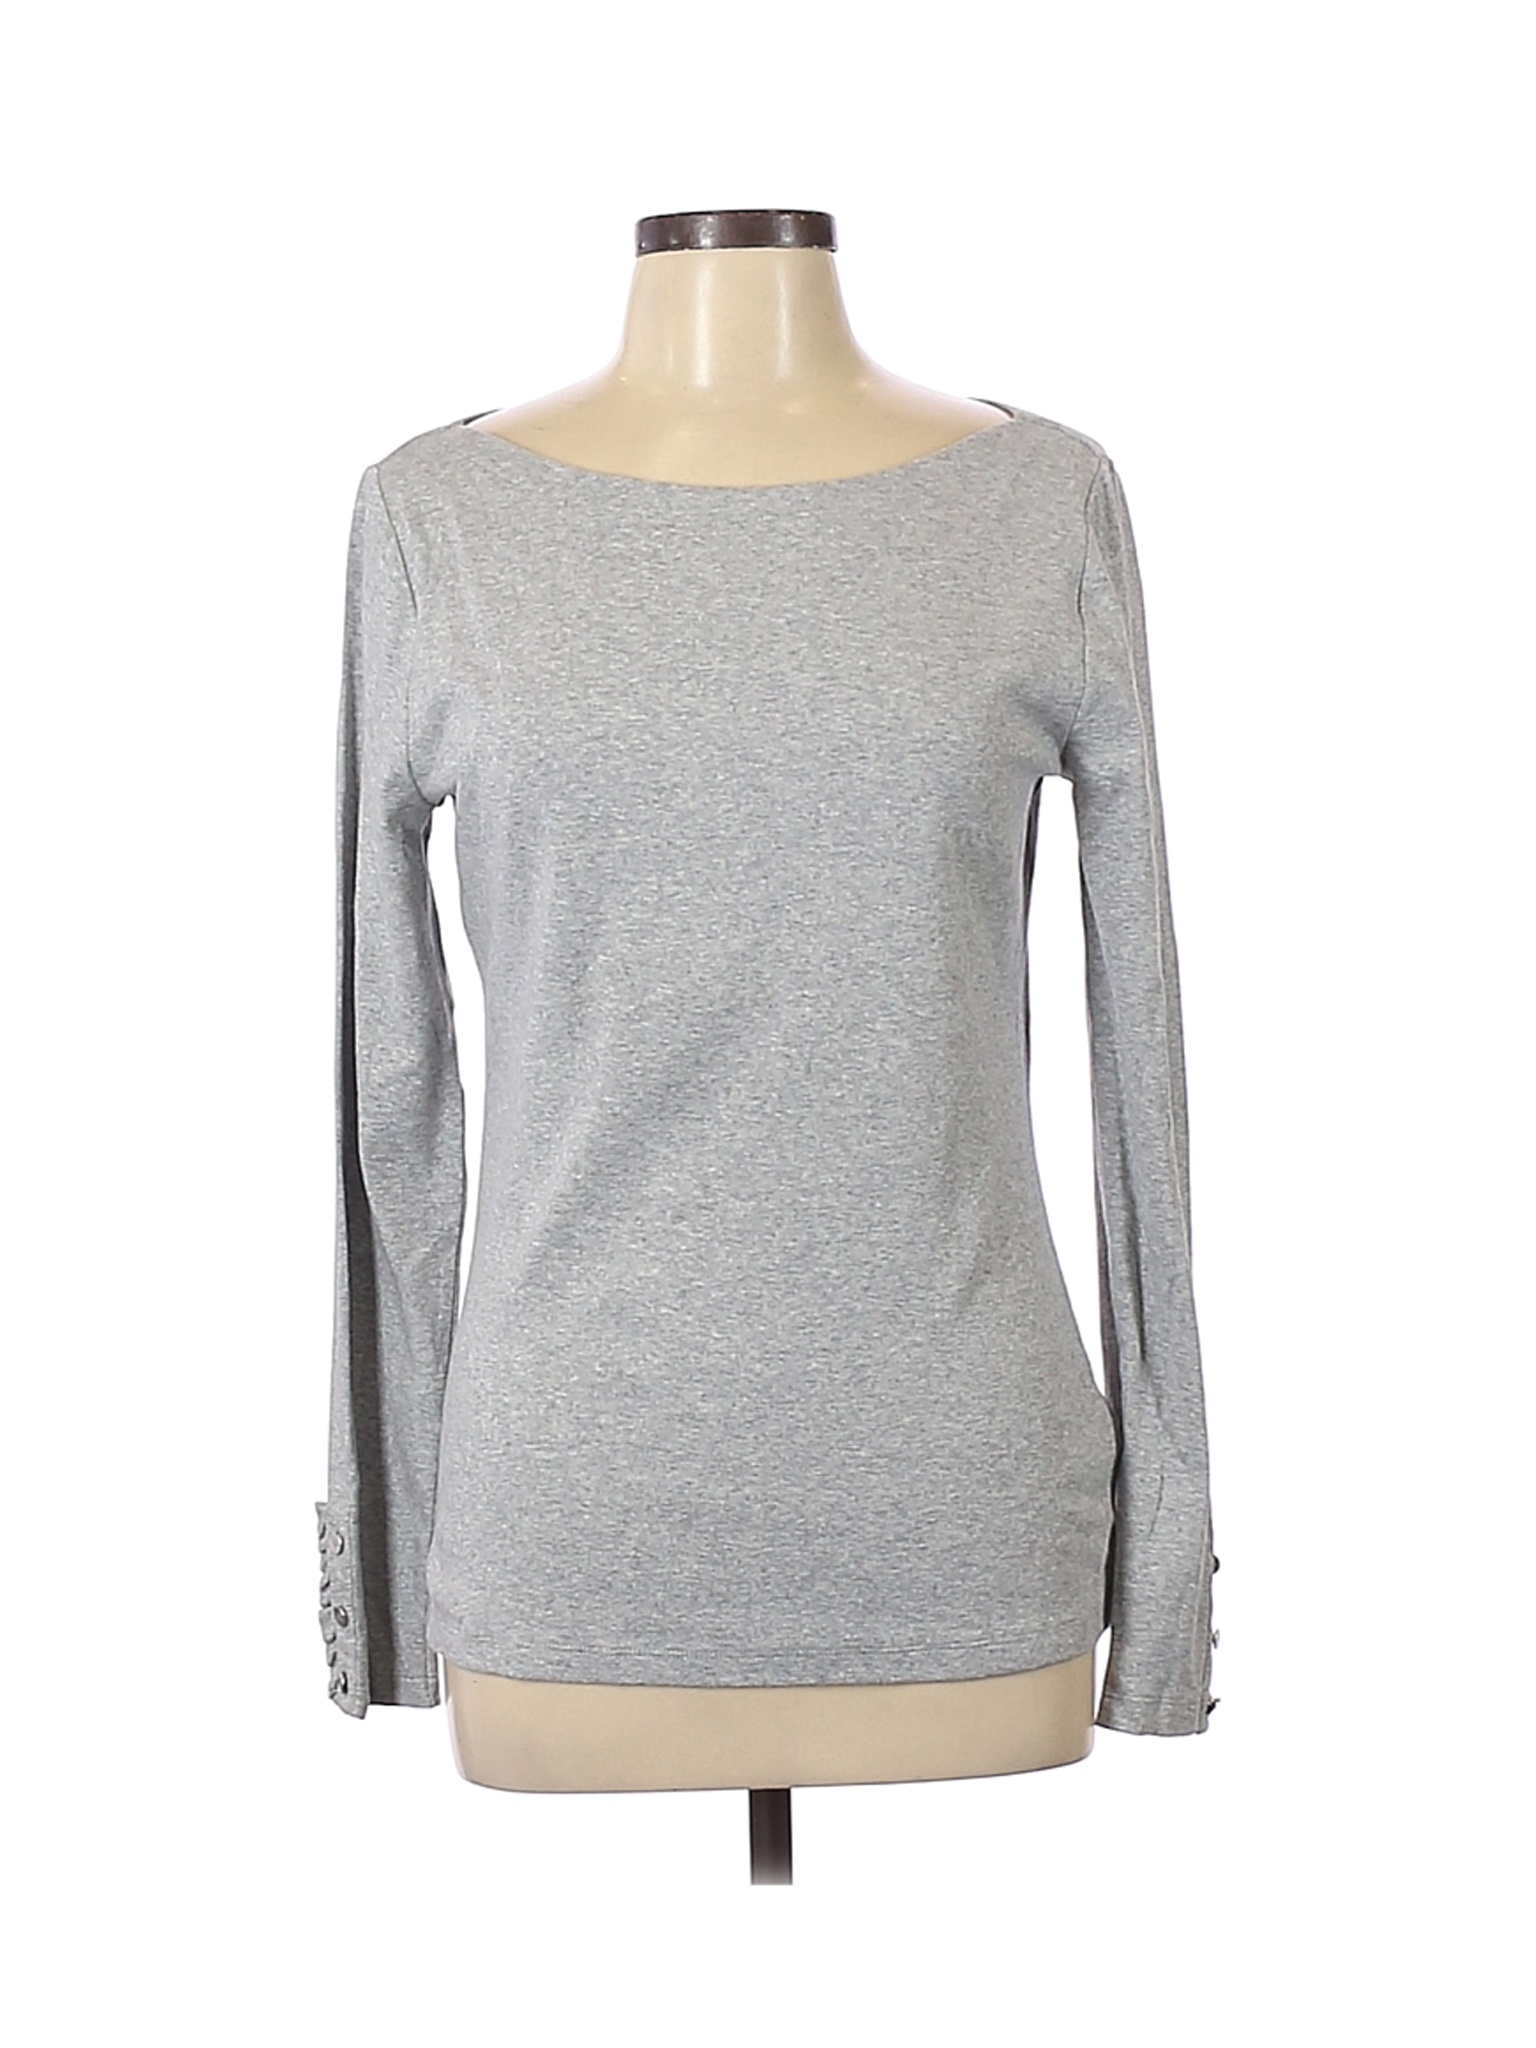 NWT Lauren by Ralph Lauren Women Gray Long Sleeve T-Shirt L | eBay